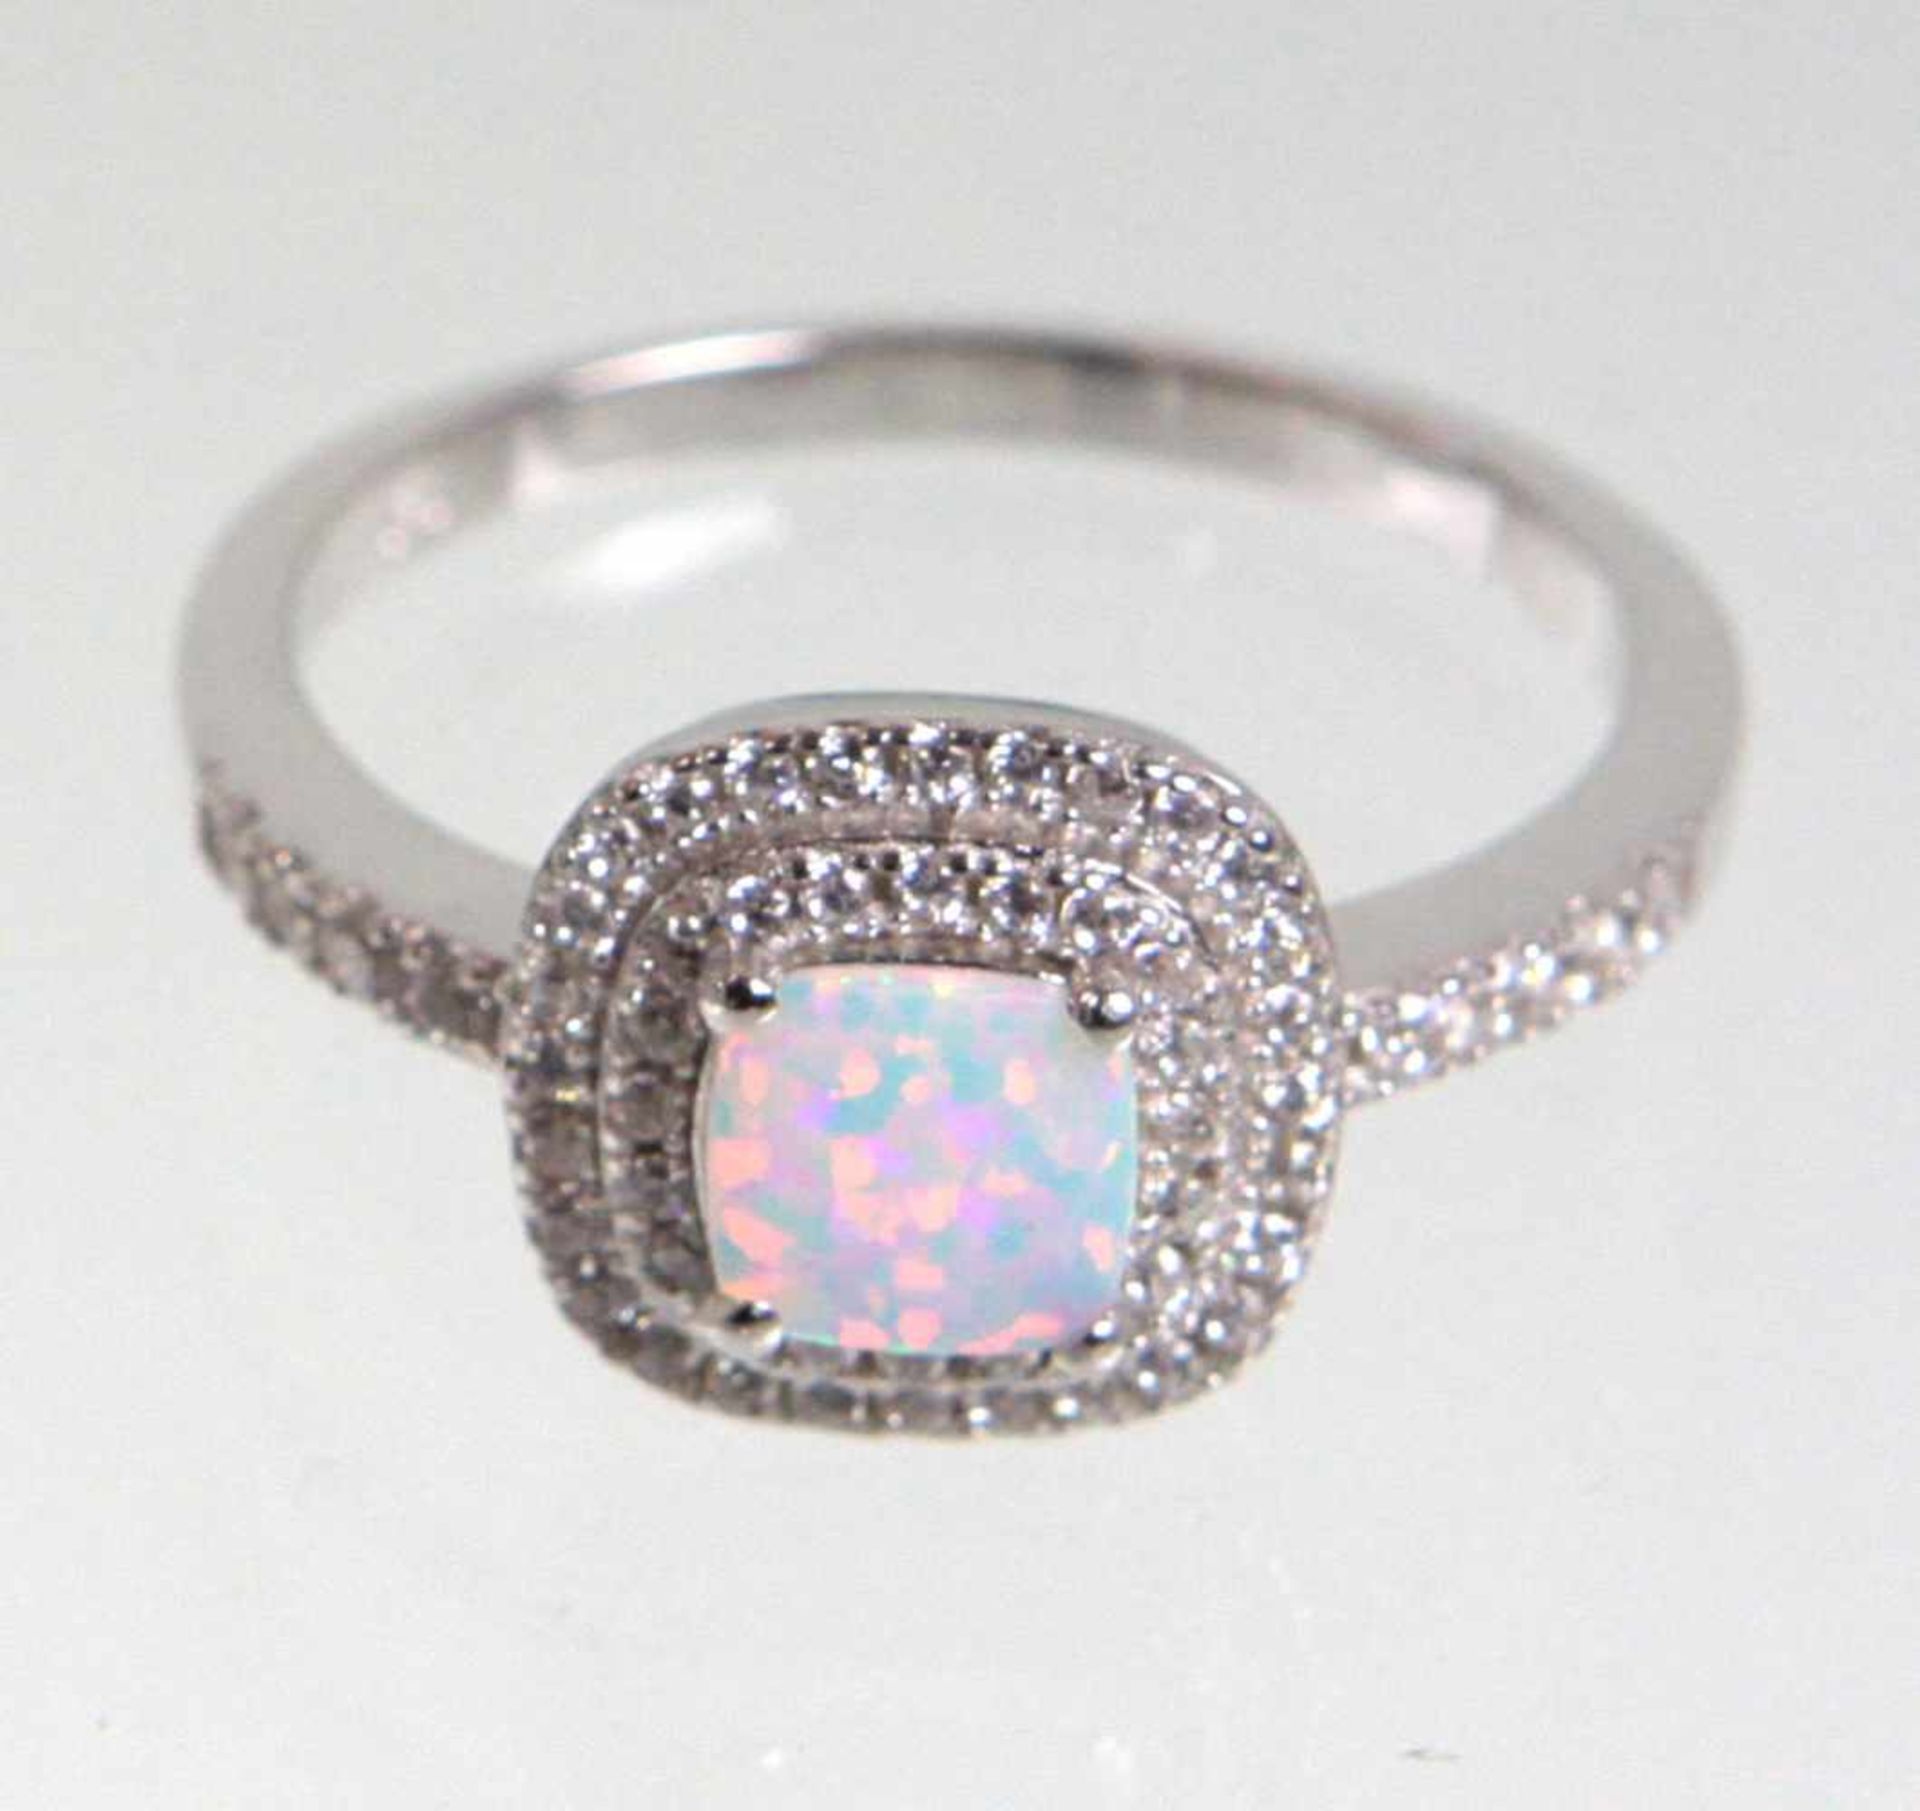 Opal Ring mit Zirkoniain in Silber 925 gearbeitet u. punziert, quadratischer leicht gerundeter